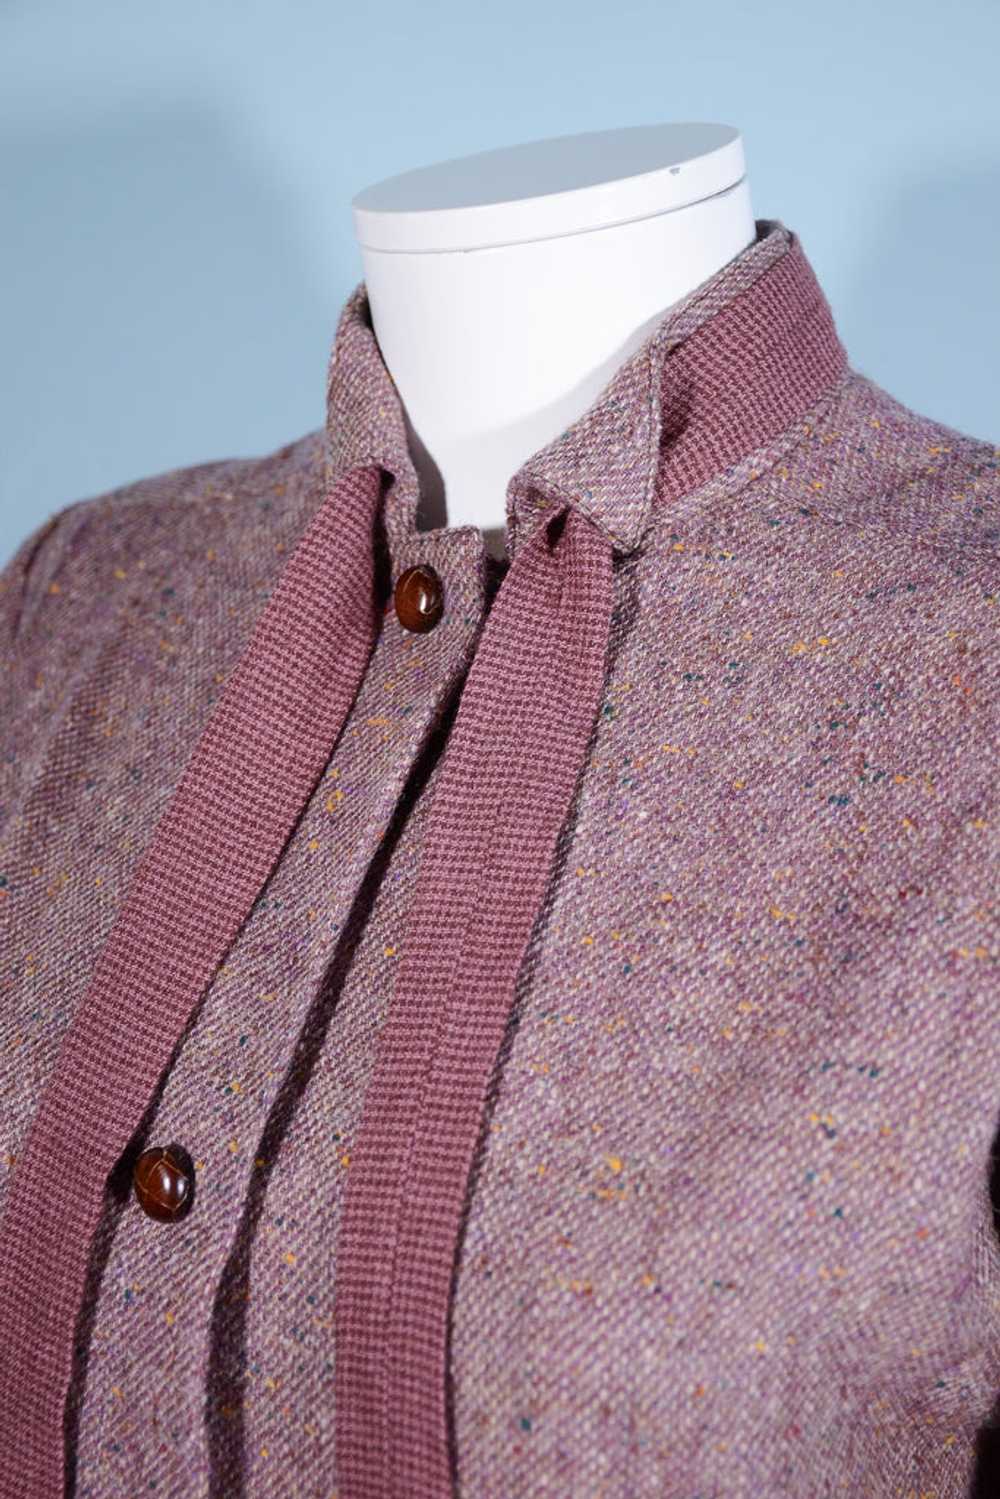 Vintage 70s Tweed Overcoat + Tie Neckline, Dark A… - image 2